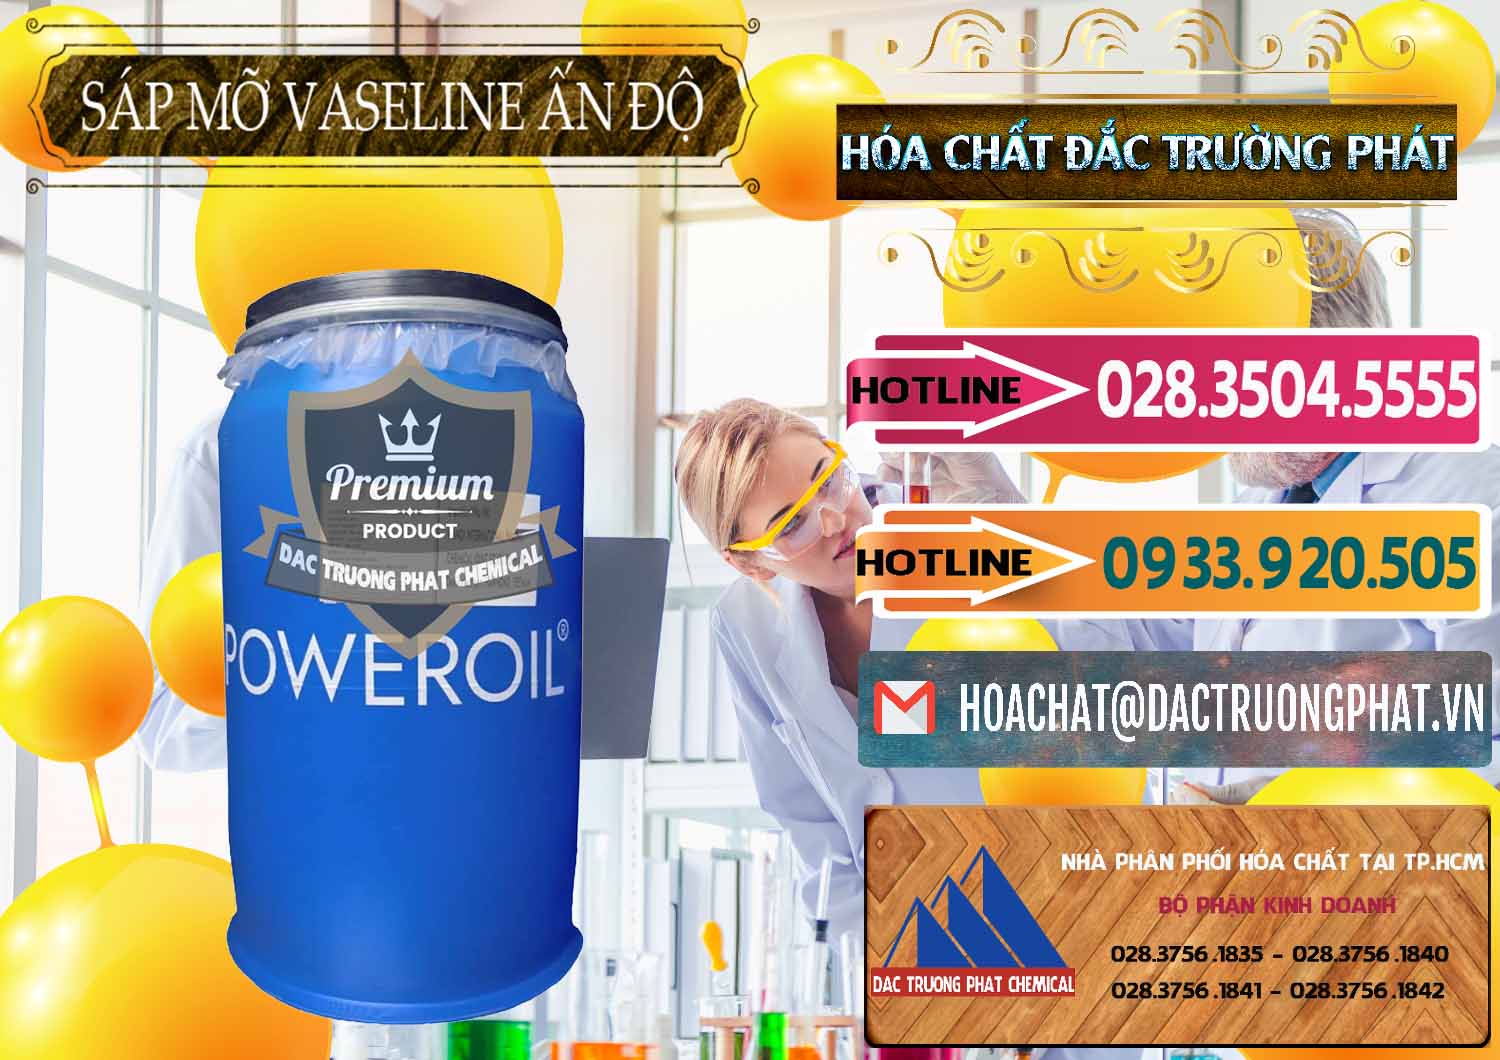 Cty chuyên bán _ cung cấp Sáp Mỡ Vaseline Ấn Độ India - 0372 - Nhà cung cấp - bán hóa chất tại TP.HCM - dactruongphat.vn